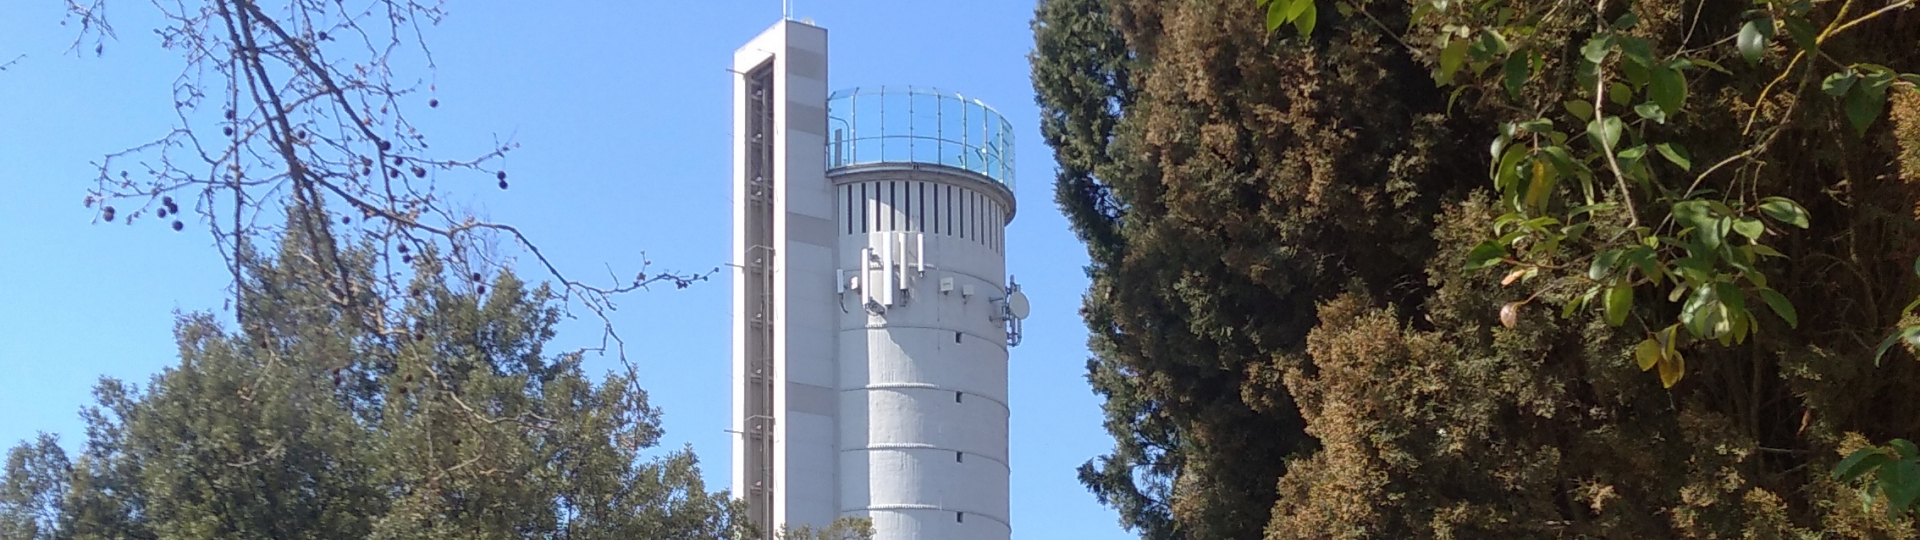 Torre del Chianti - Torre dell'acqua